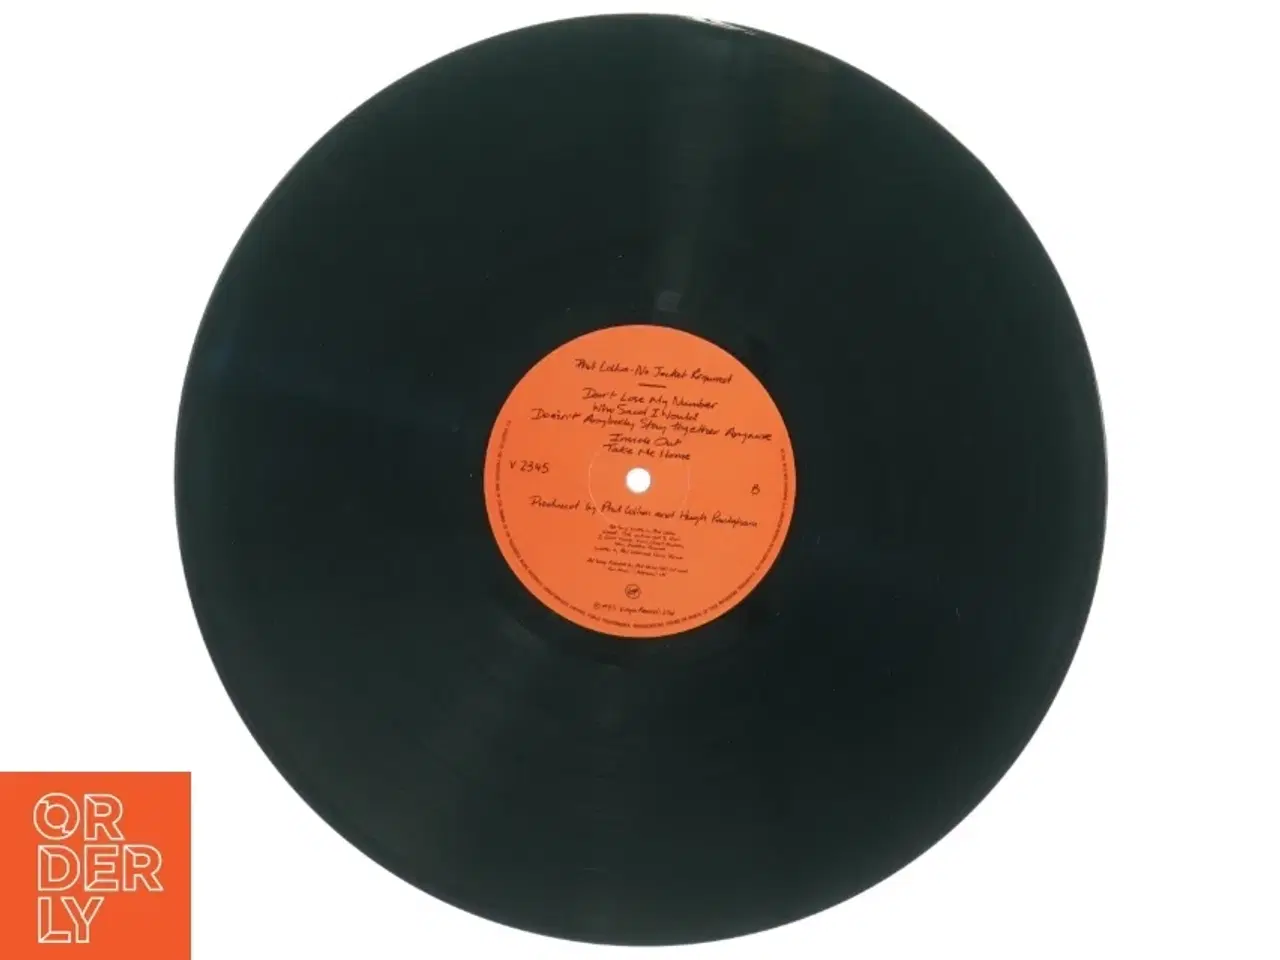 Billede 2 - Phil Collins No Jacket Required  Vinyl LP fra Virgin Records (str. 31 x 31 cm)